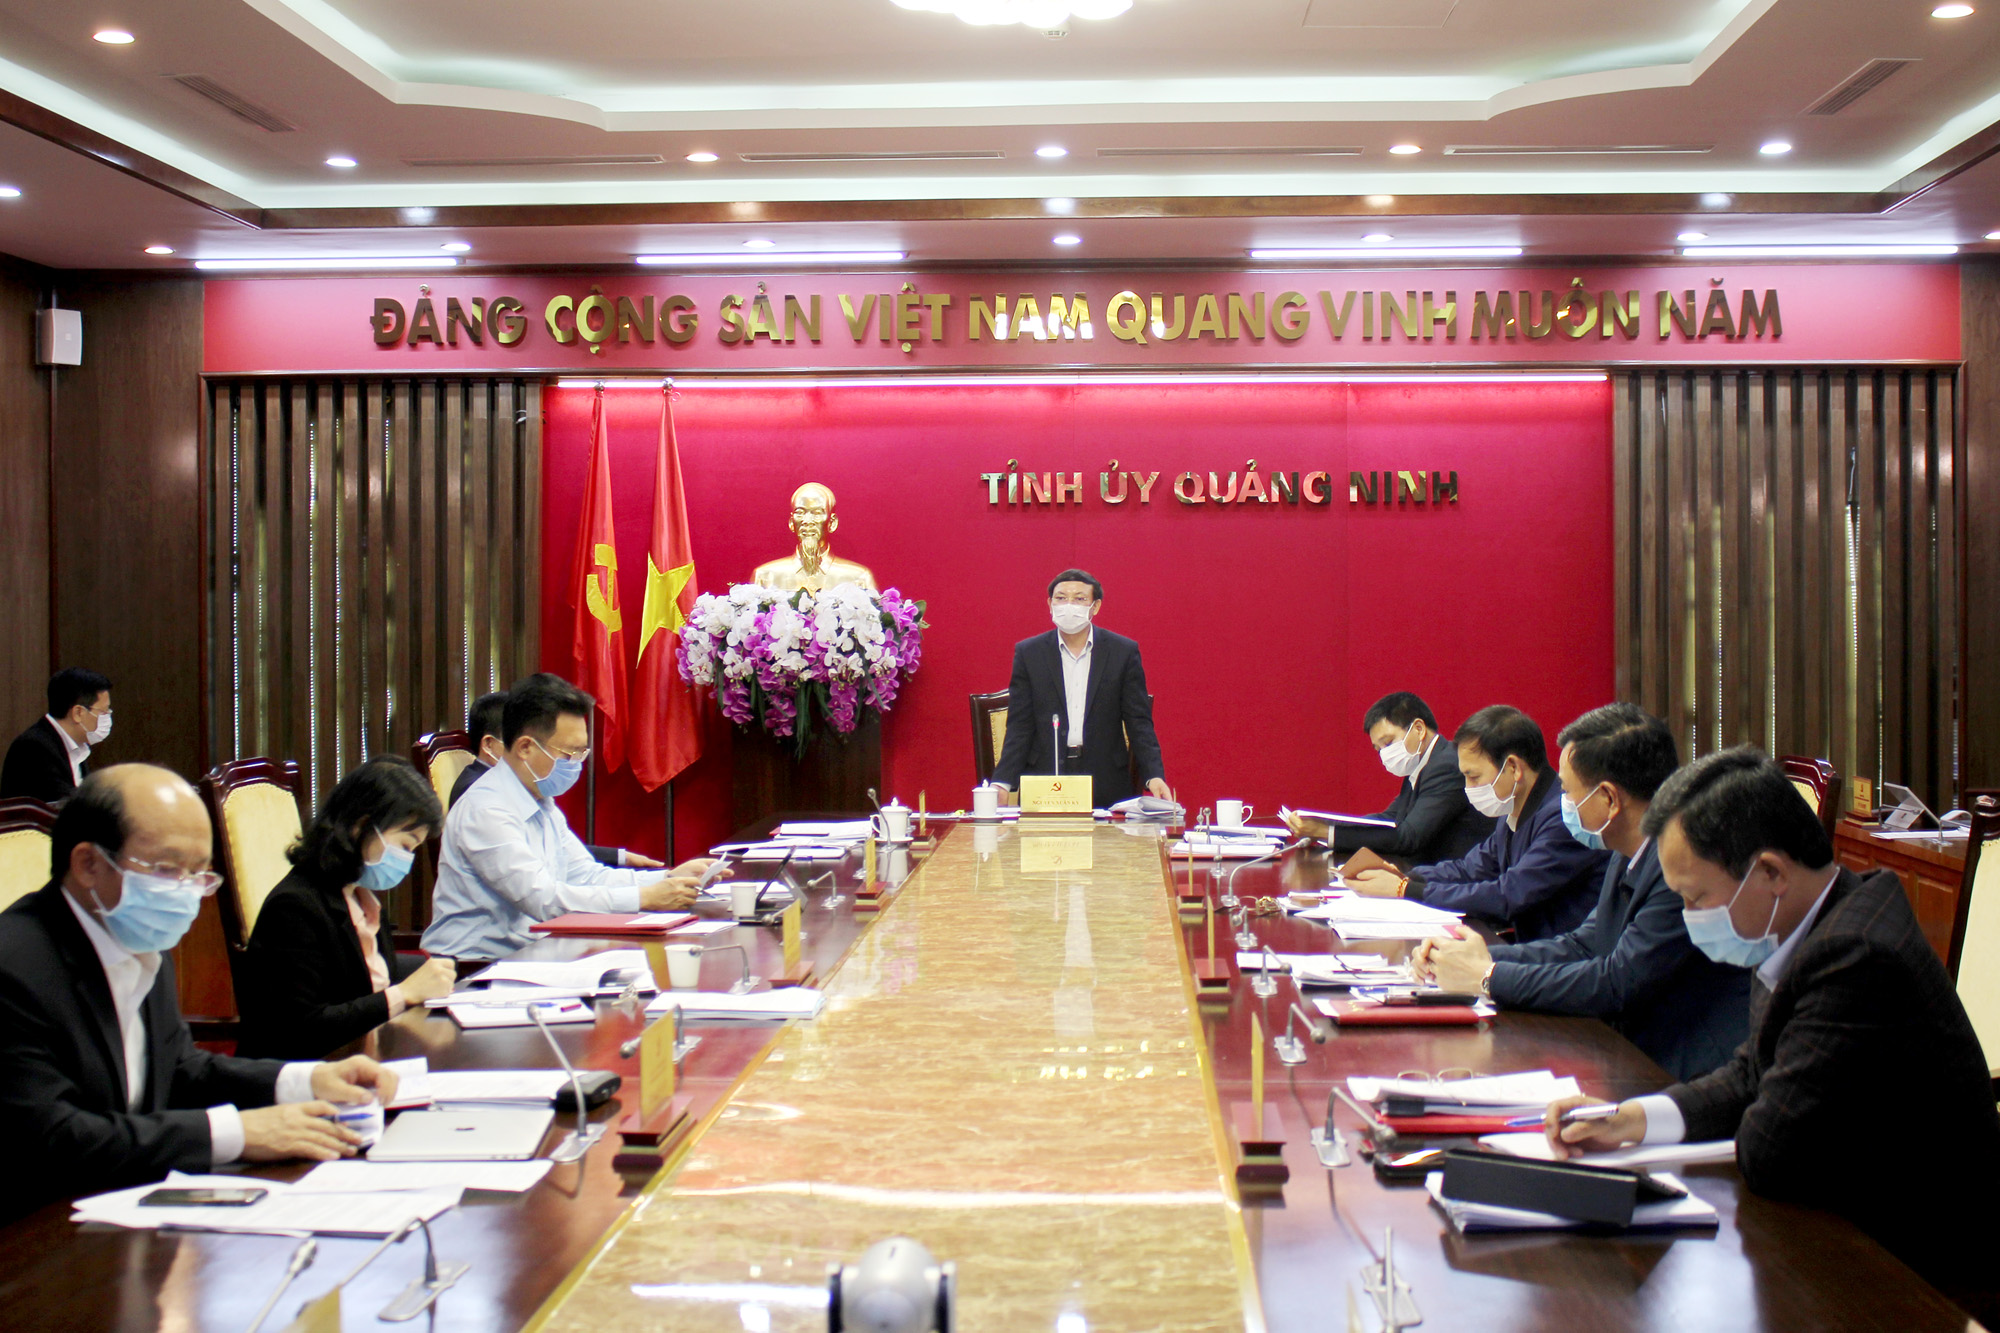 Đồng chí Nguyễn Xuân Ký, Bí thư Tỉnh ủy, Chủ tịch HĐND tỉnh, Trưởng BCĐ cấp tỉnh, kết luận cuộc họp.